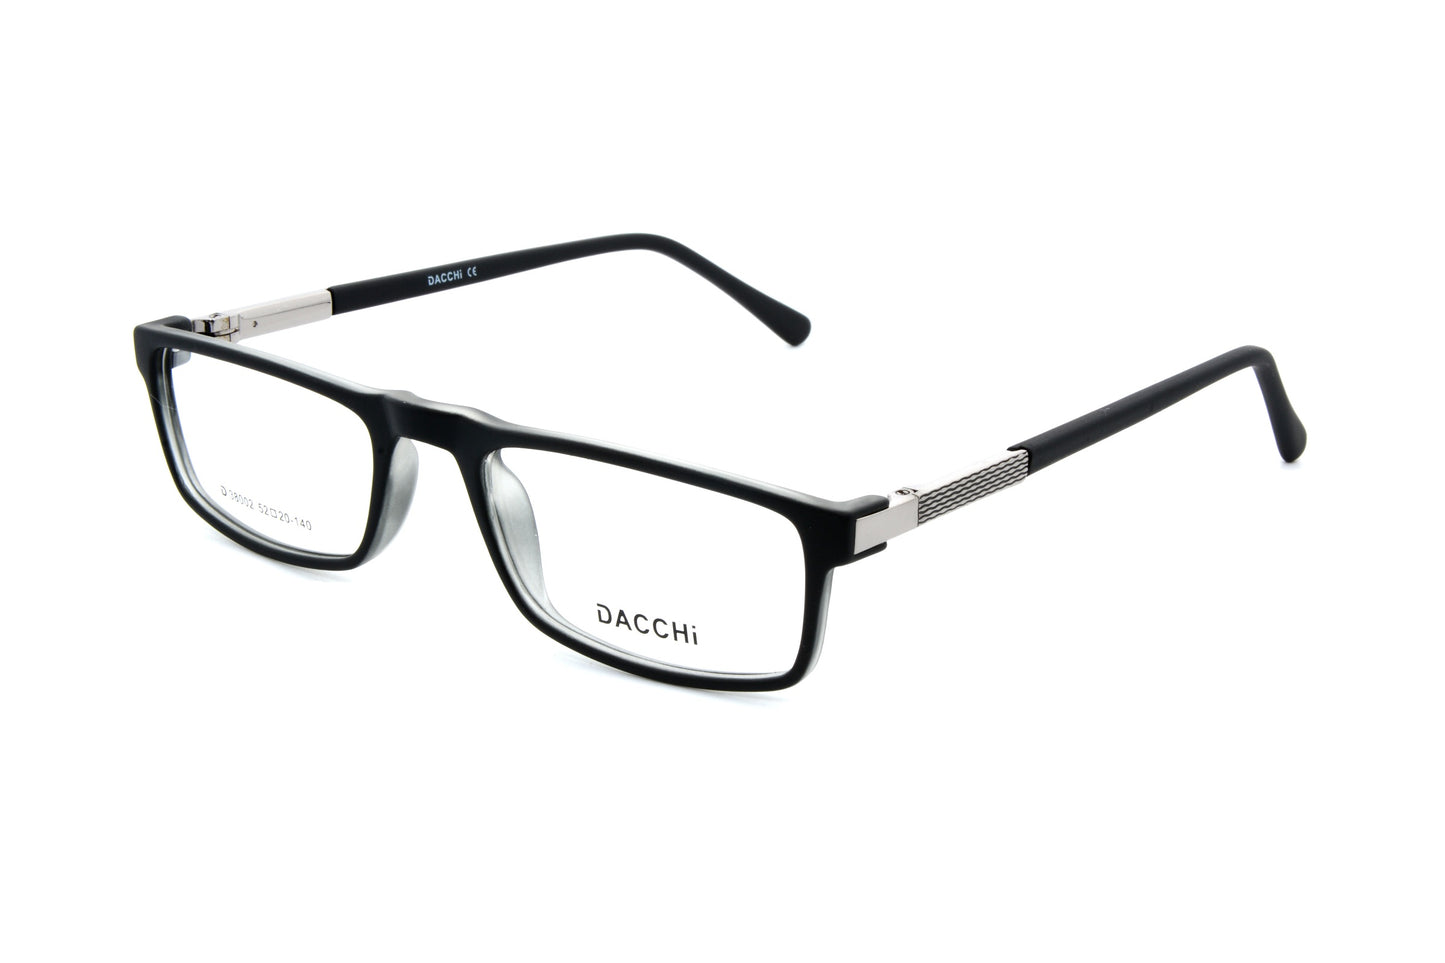 Dacchi eyewear D38002 C4